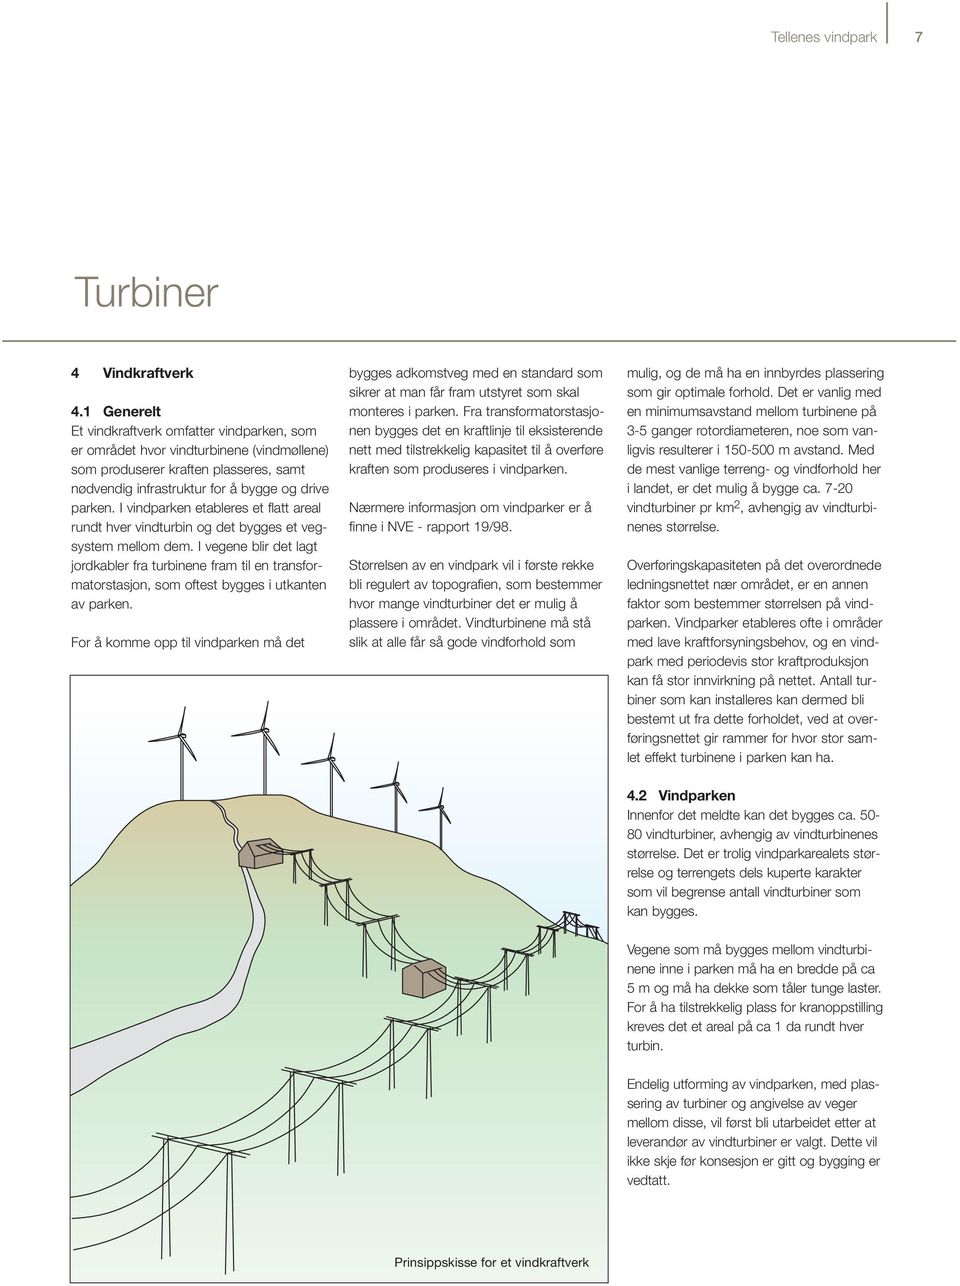 I vindparken etableres et flatt areal rundt hver vindturbin og det bygges et vegsystem mellom dem.